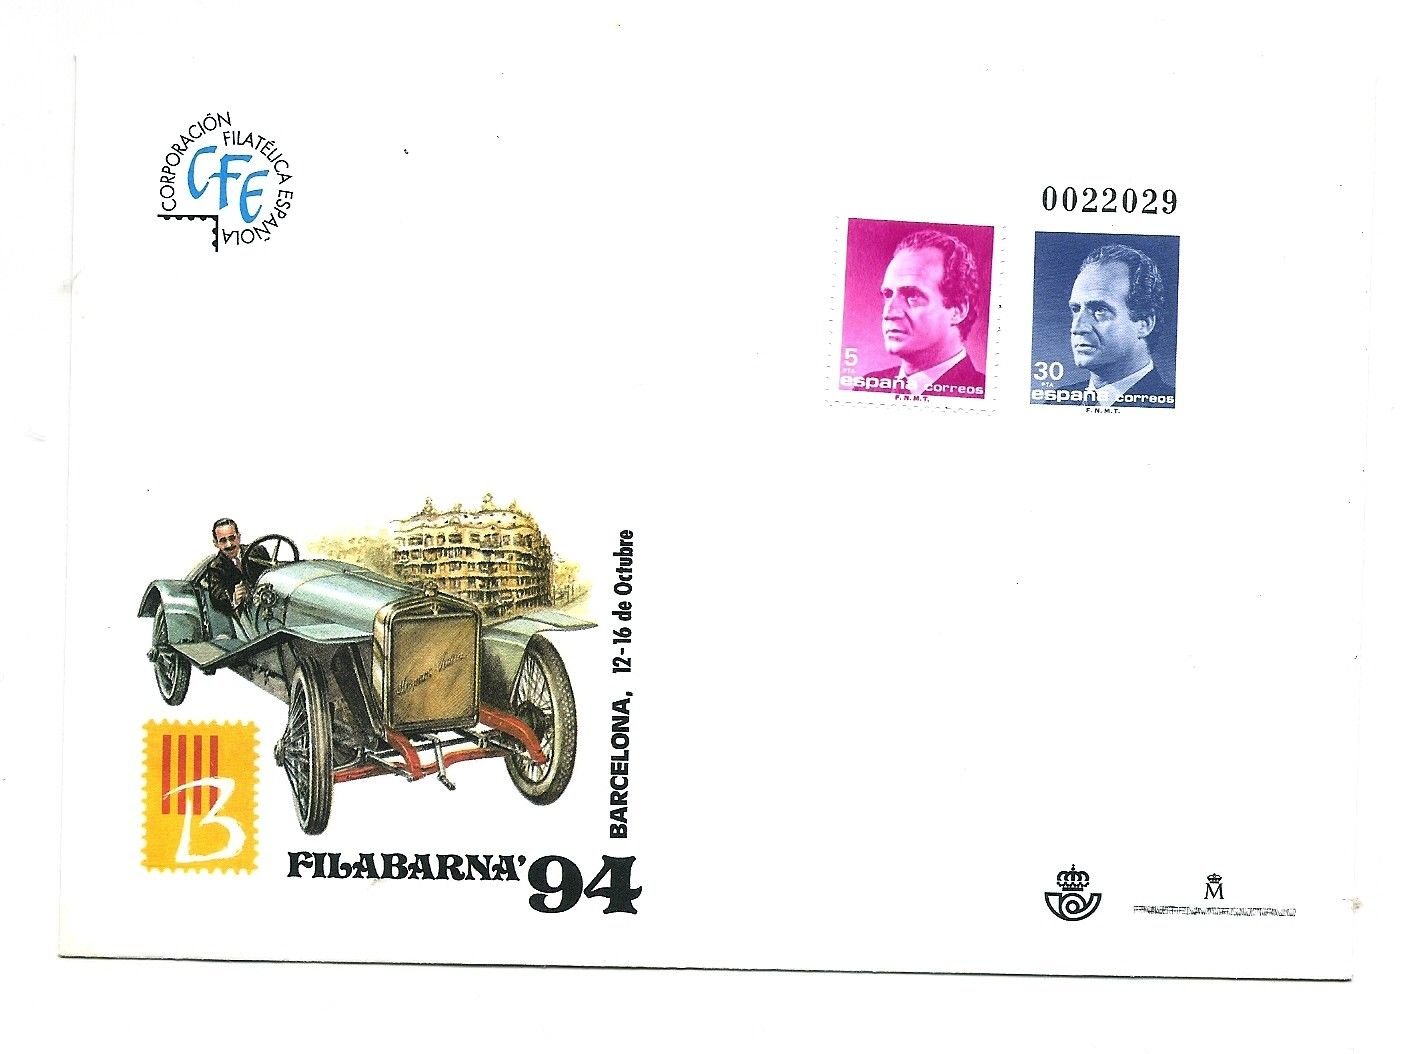 SPAIN - Postal Stationary Envelope for Filabarna 94 Philatelic Expo